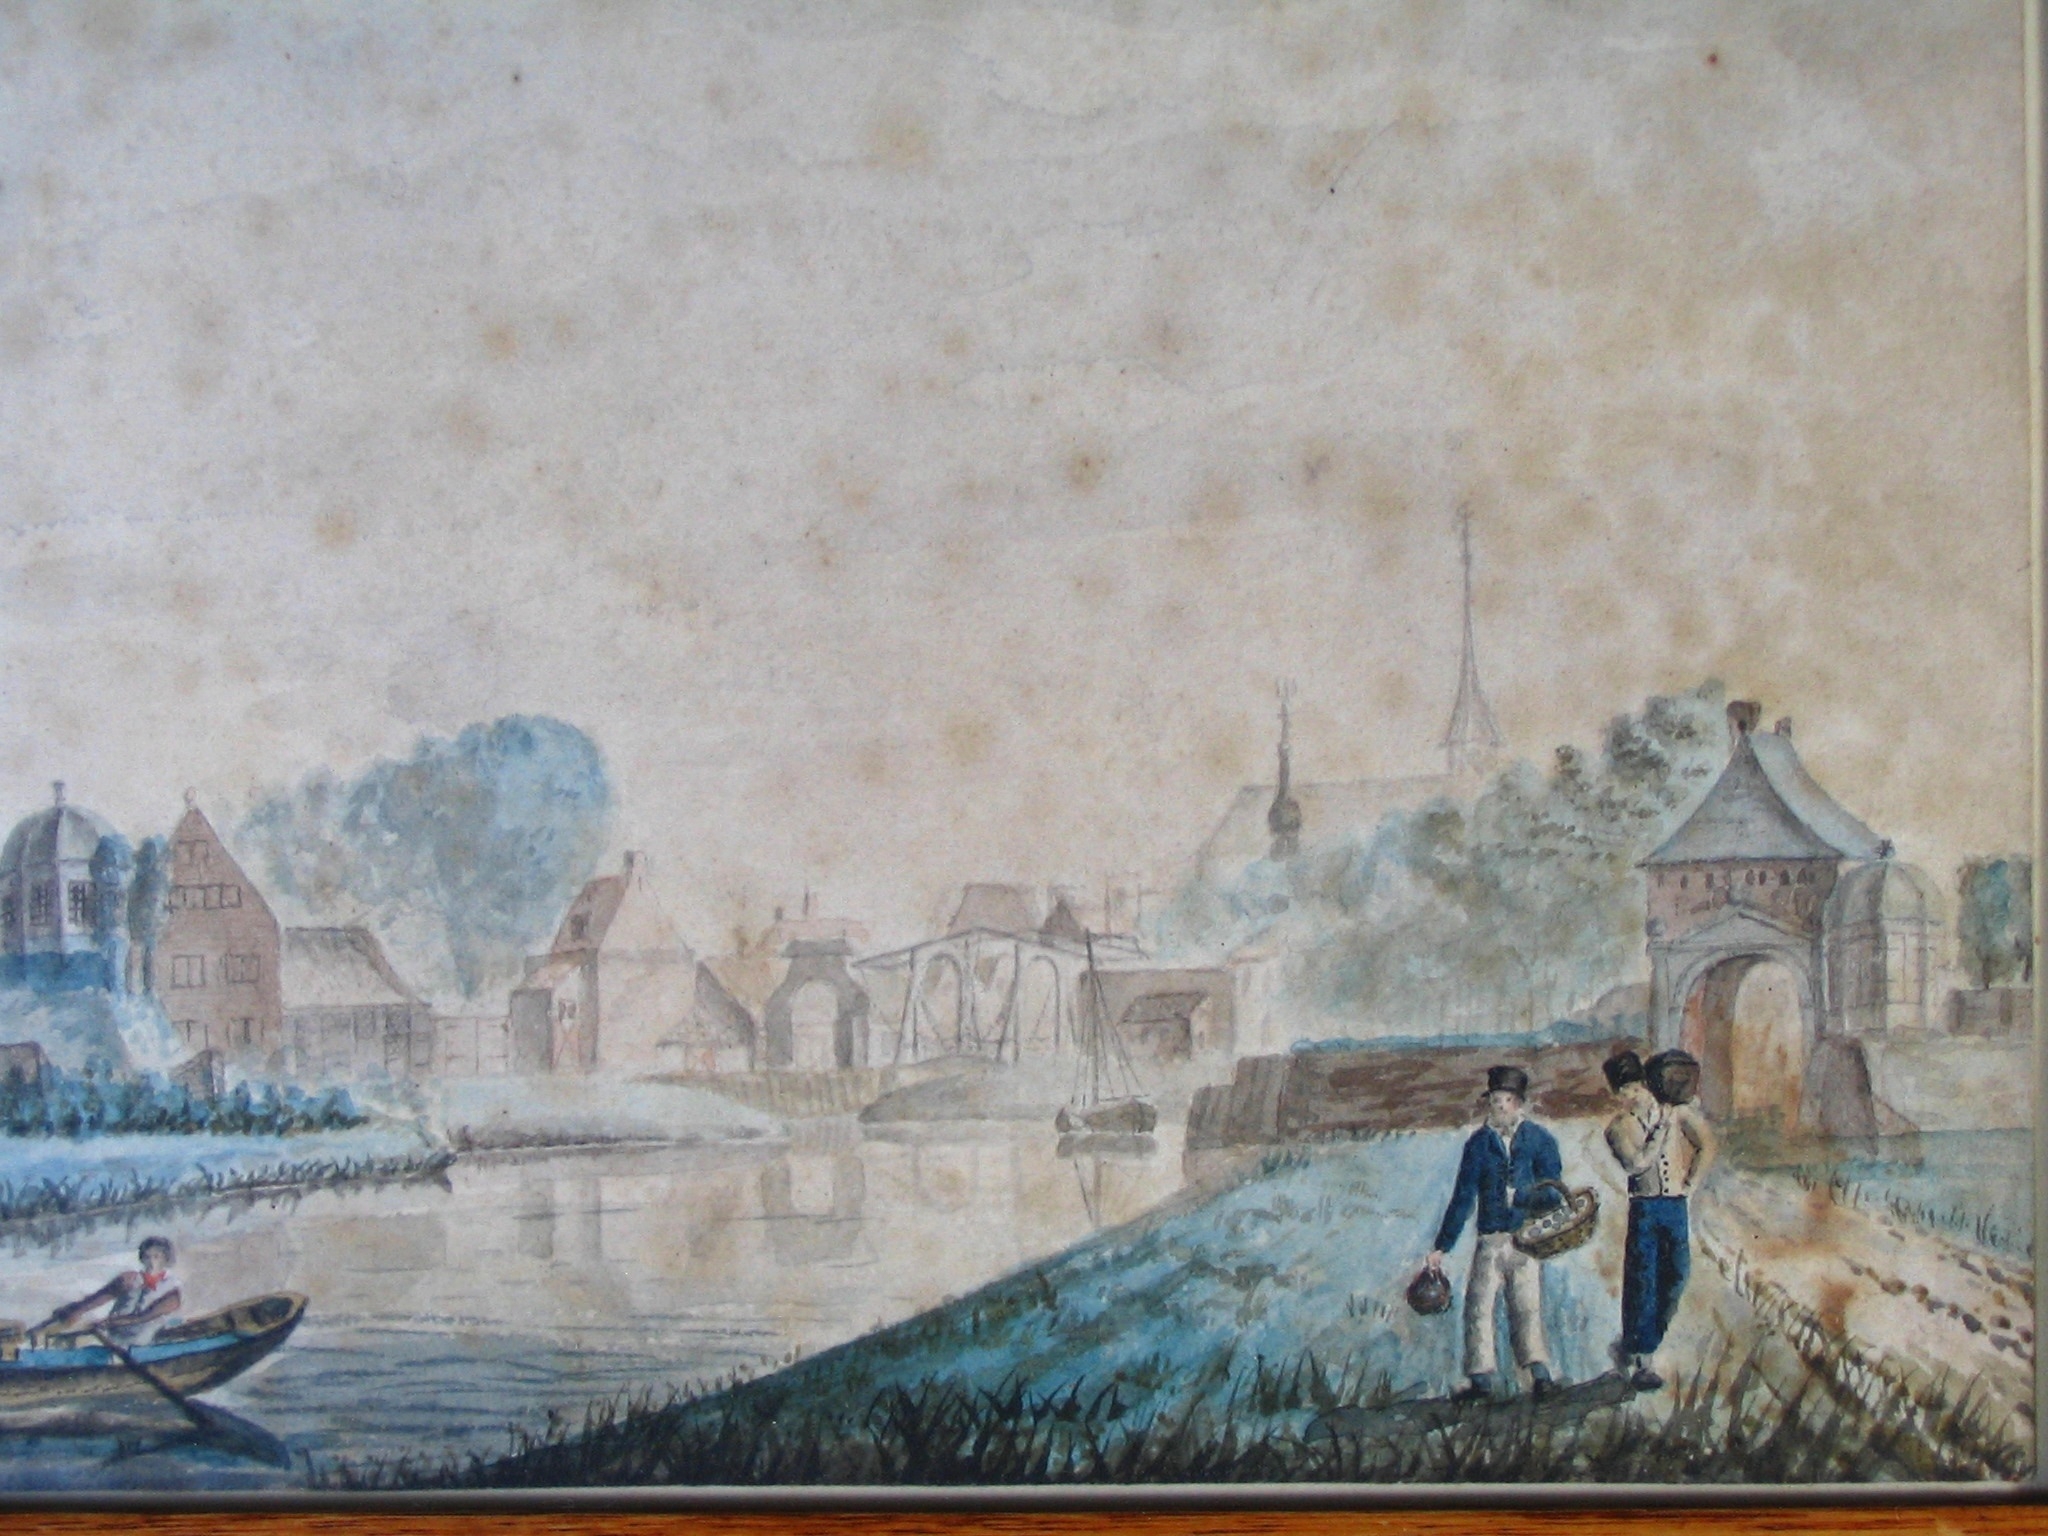 De haven met de Nieuwe Havenpoort en de weg naar Wilhelminadorp, detail van een schilderij door G. Braam, 1840. HMDB.